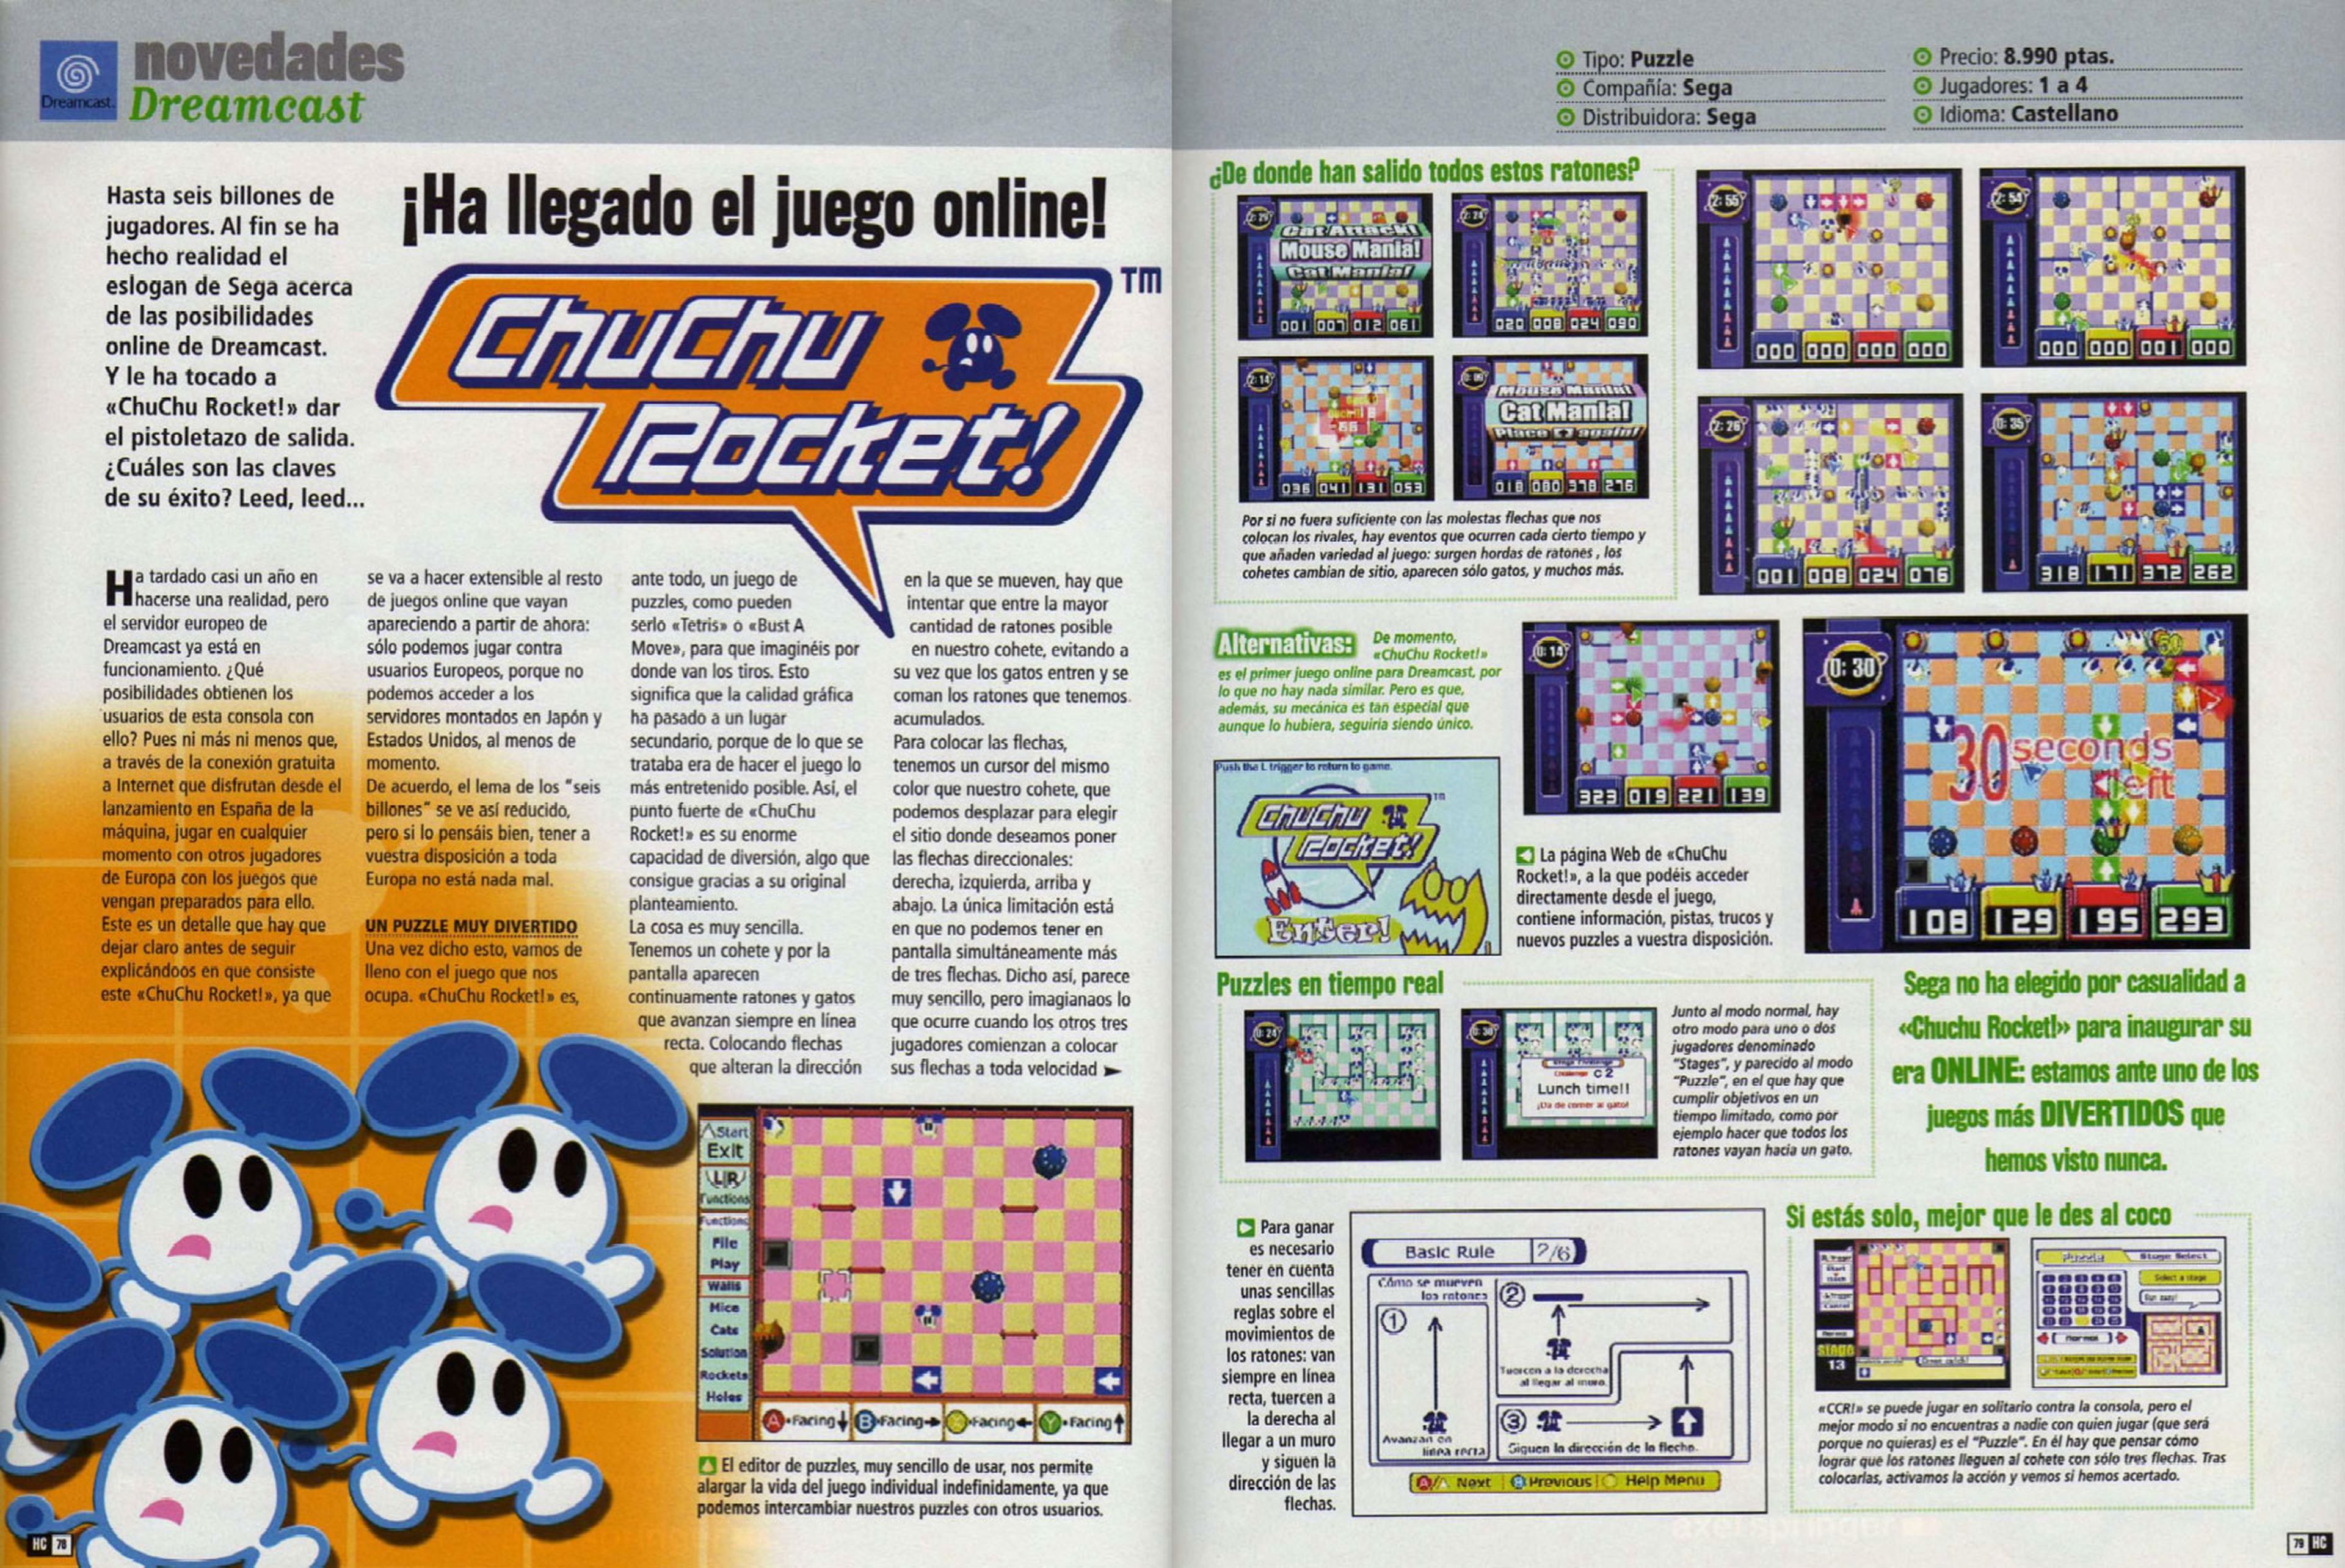 Juegos online de Dreamcast